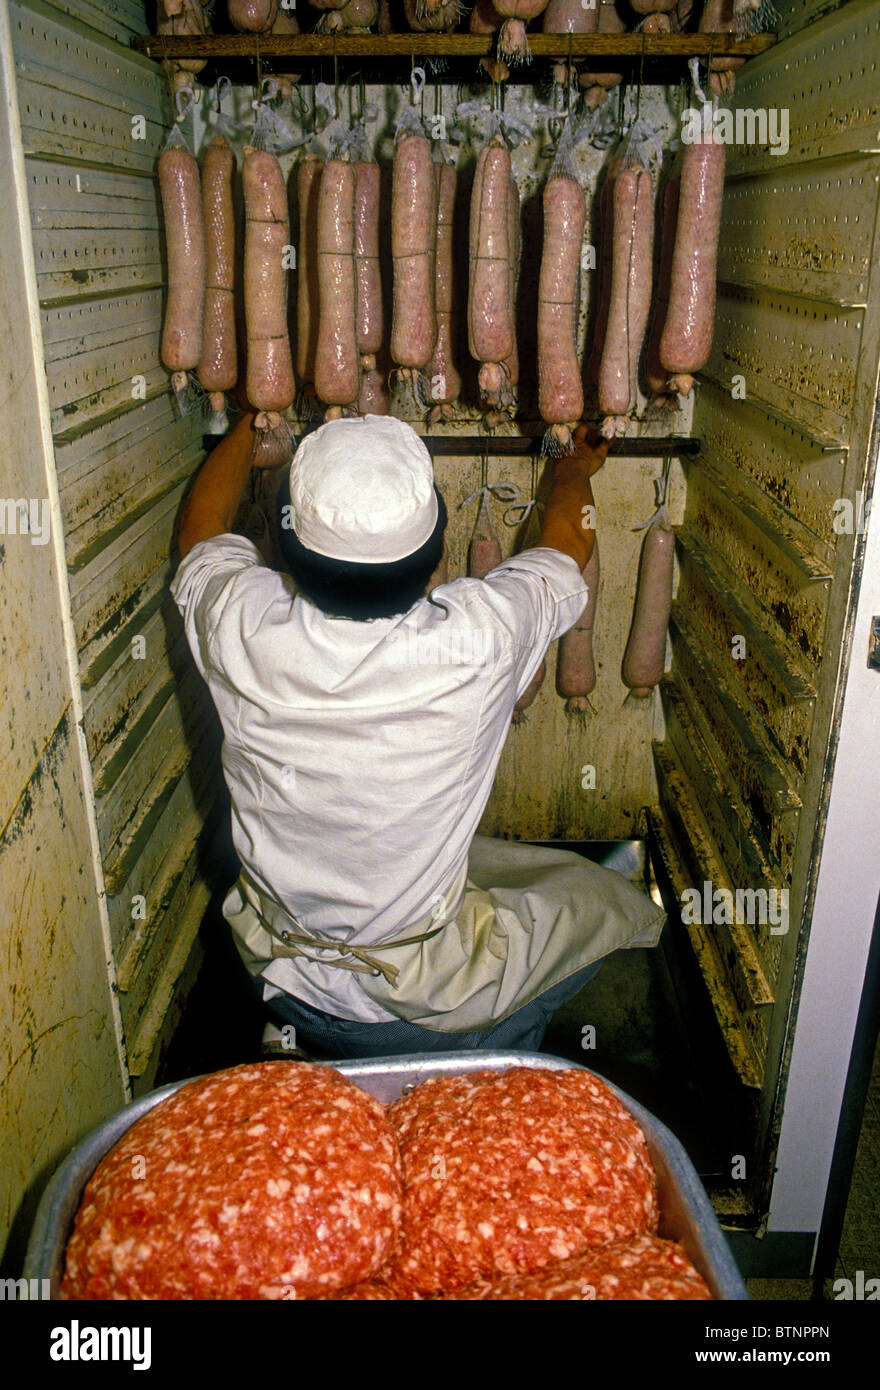 L'homme français, employé, ouvrier, séchage de saucisse de porc, saucisse bouilloire, charcuterie de Latour, ville de Lyon, Rhône-Alpes, France Banque D'Images